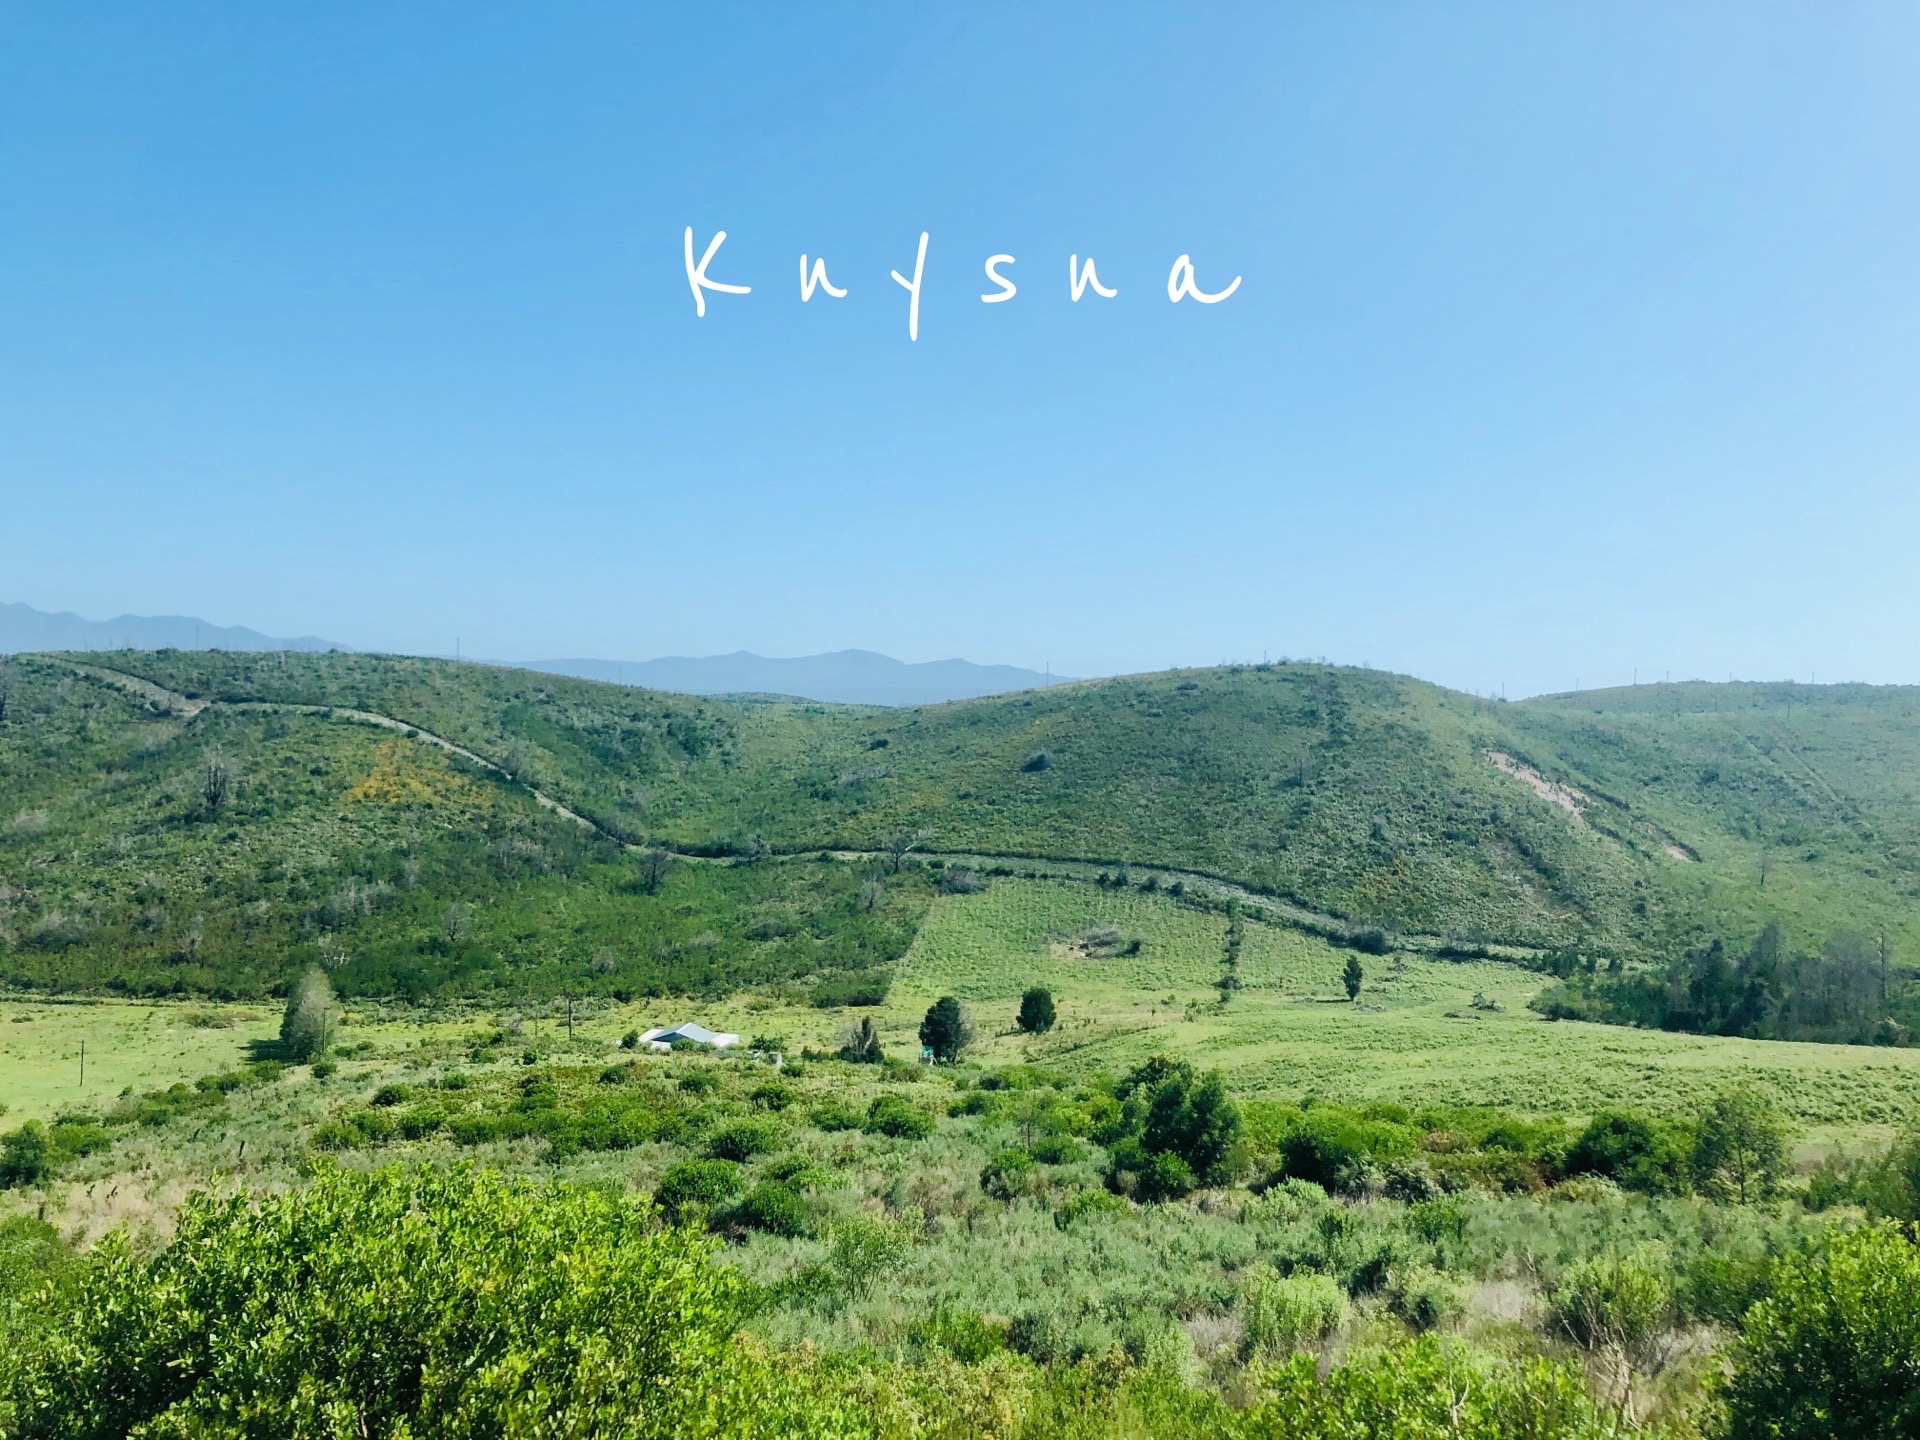 奈斯纳(Knysna，此处K不发音，如同know)，位于南非花园大道(Garden Route)上，